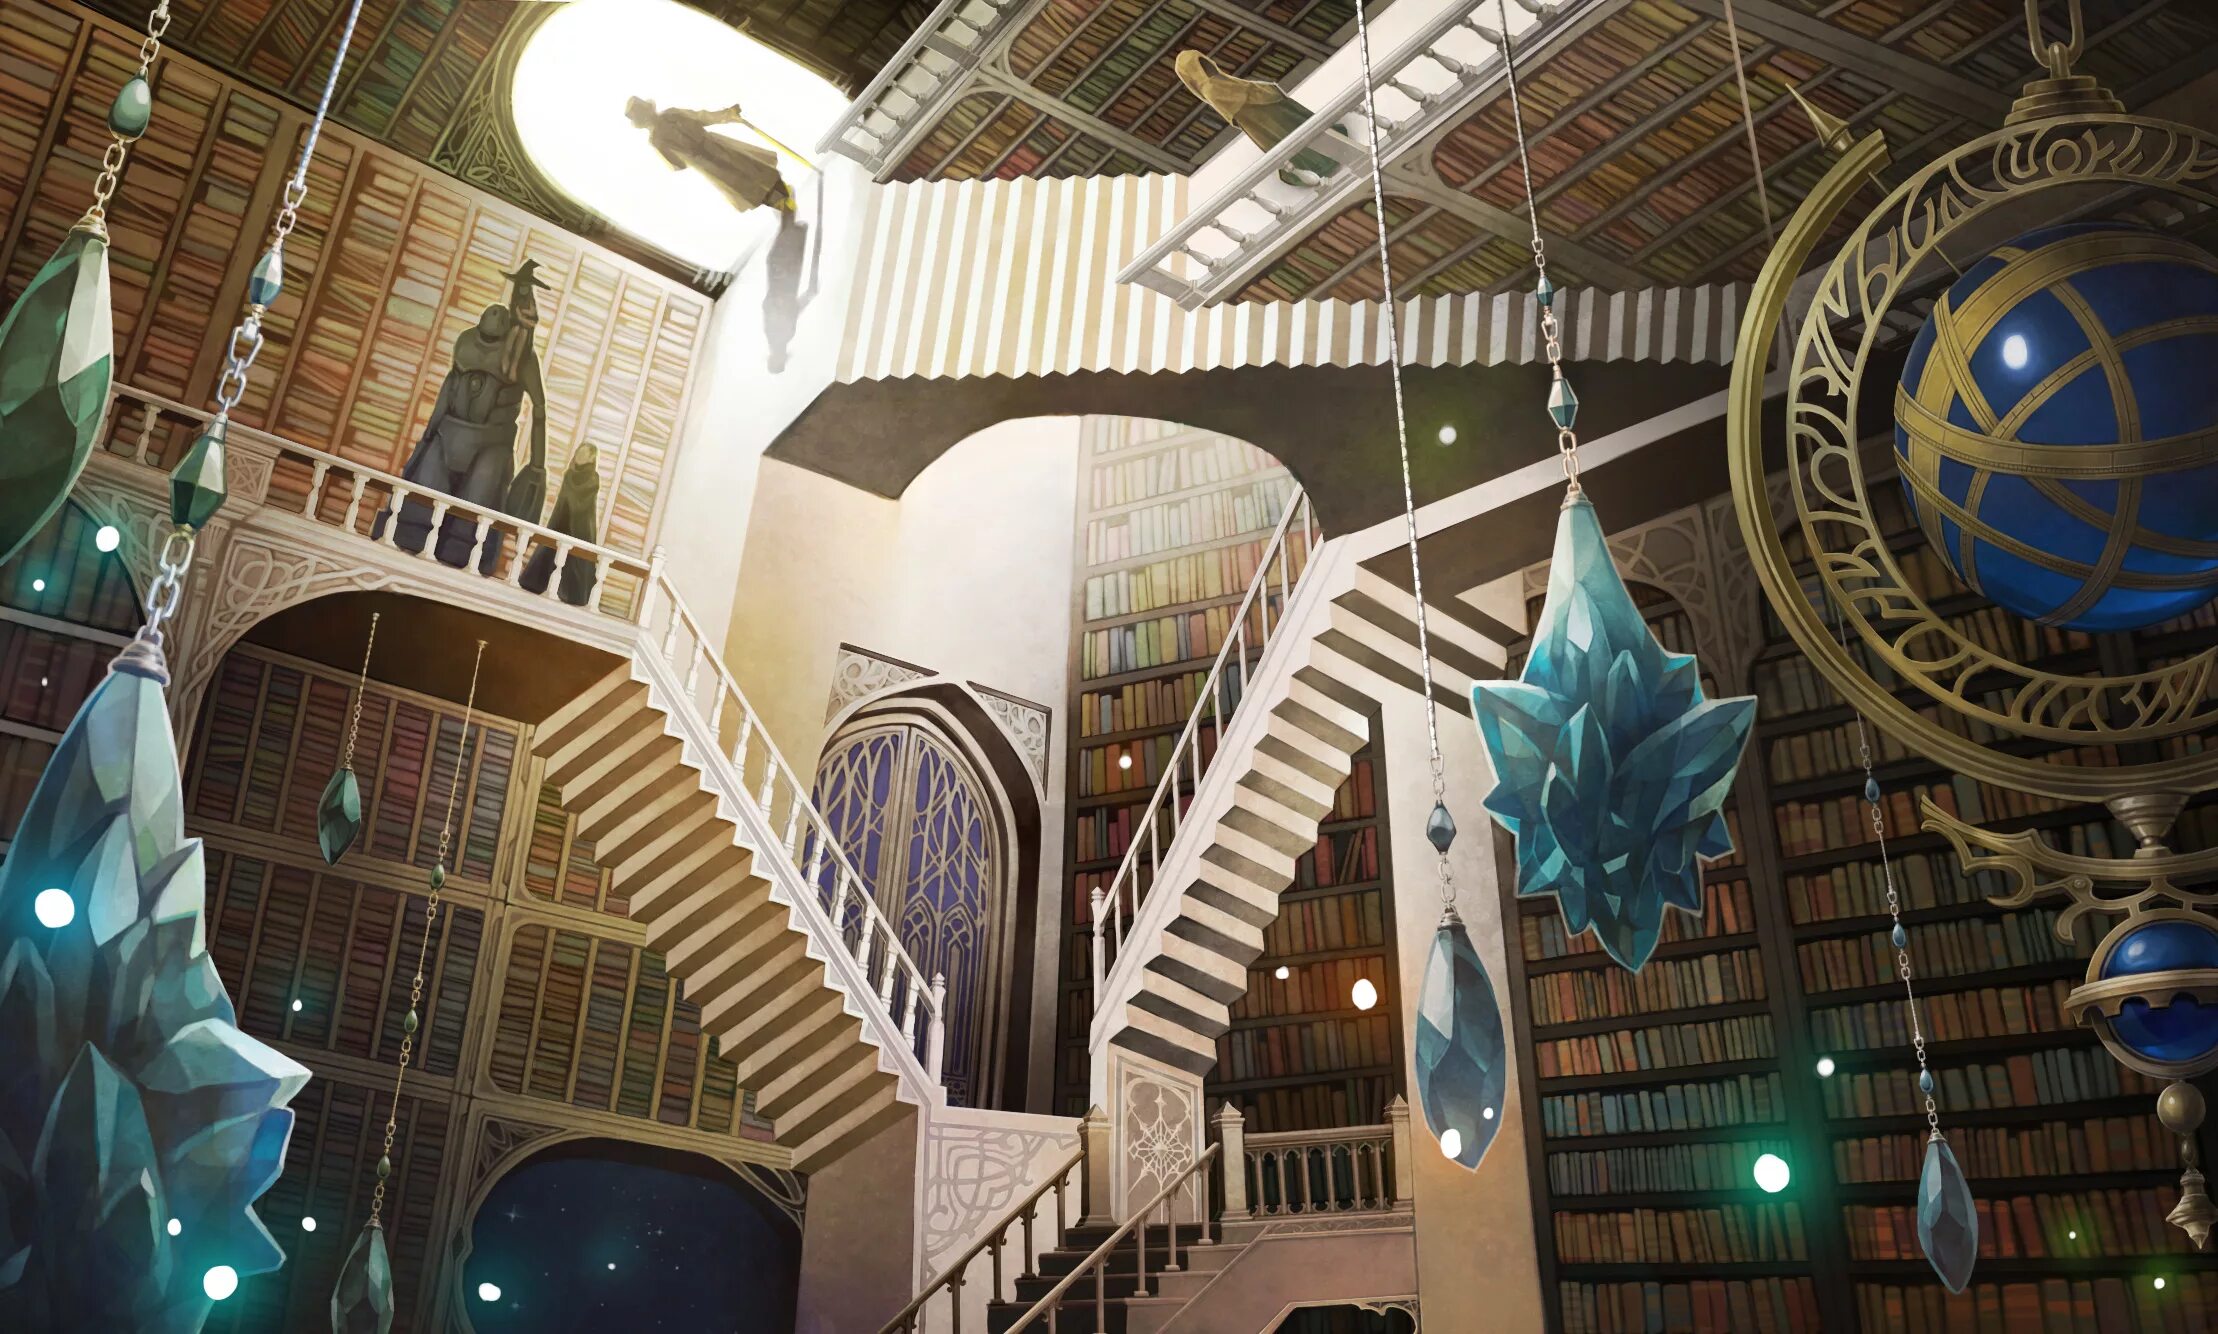 Fantasy world библиотека бесплатная электронная. Библиотека арт. Библиотека здание фэнтези. Здание библиотеки фэнтези арт. Волшебная библиотека.